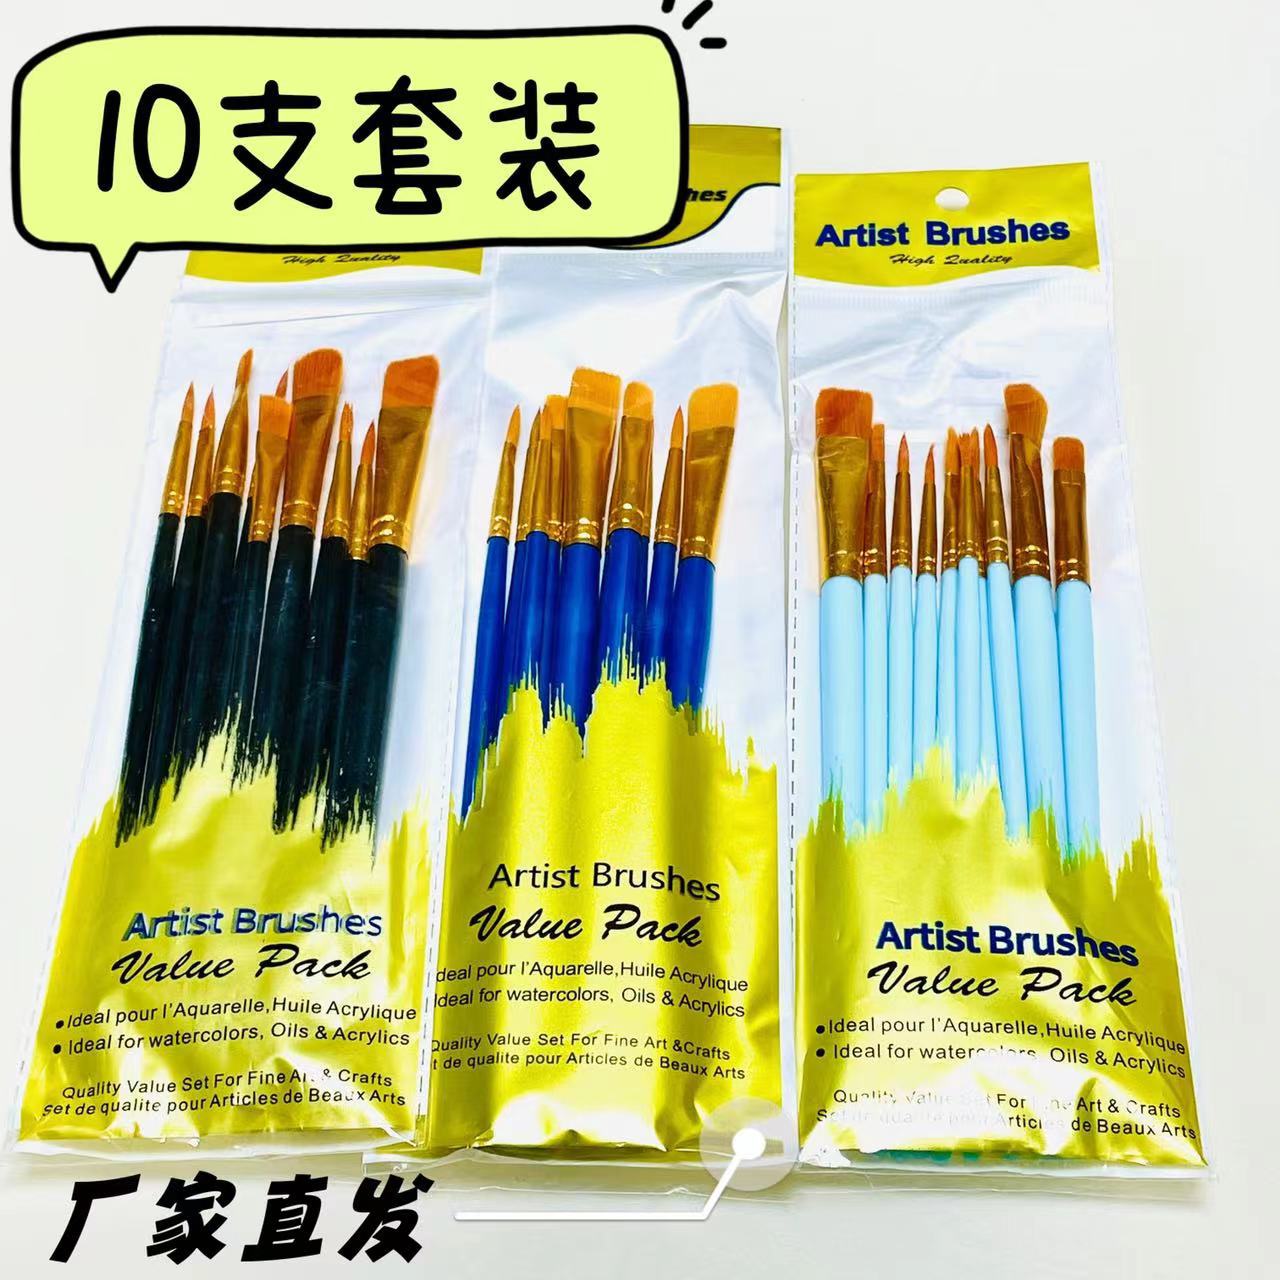 亚马逊塑料10支尼龙画笔珠光蓝杆组合笔刷套装蓝色水粉水彩油画